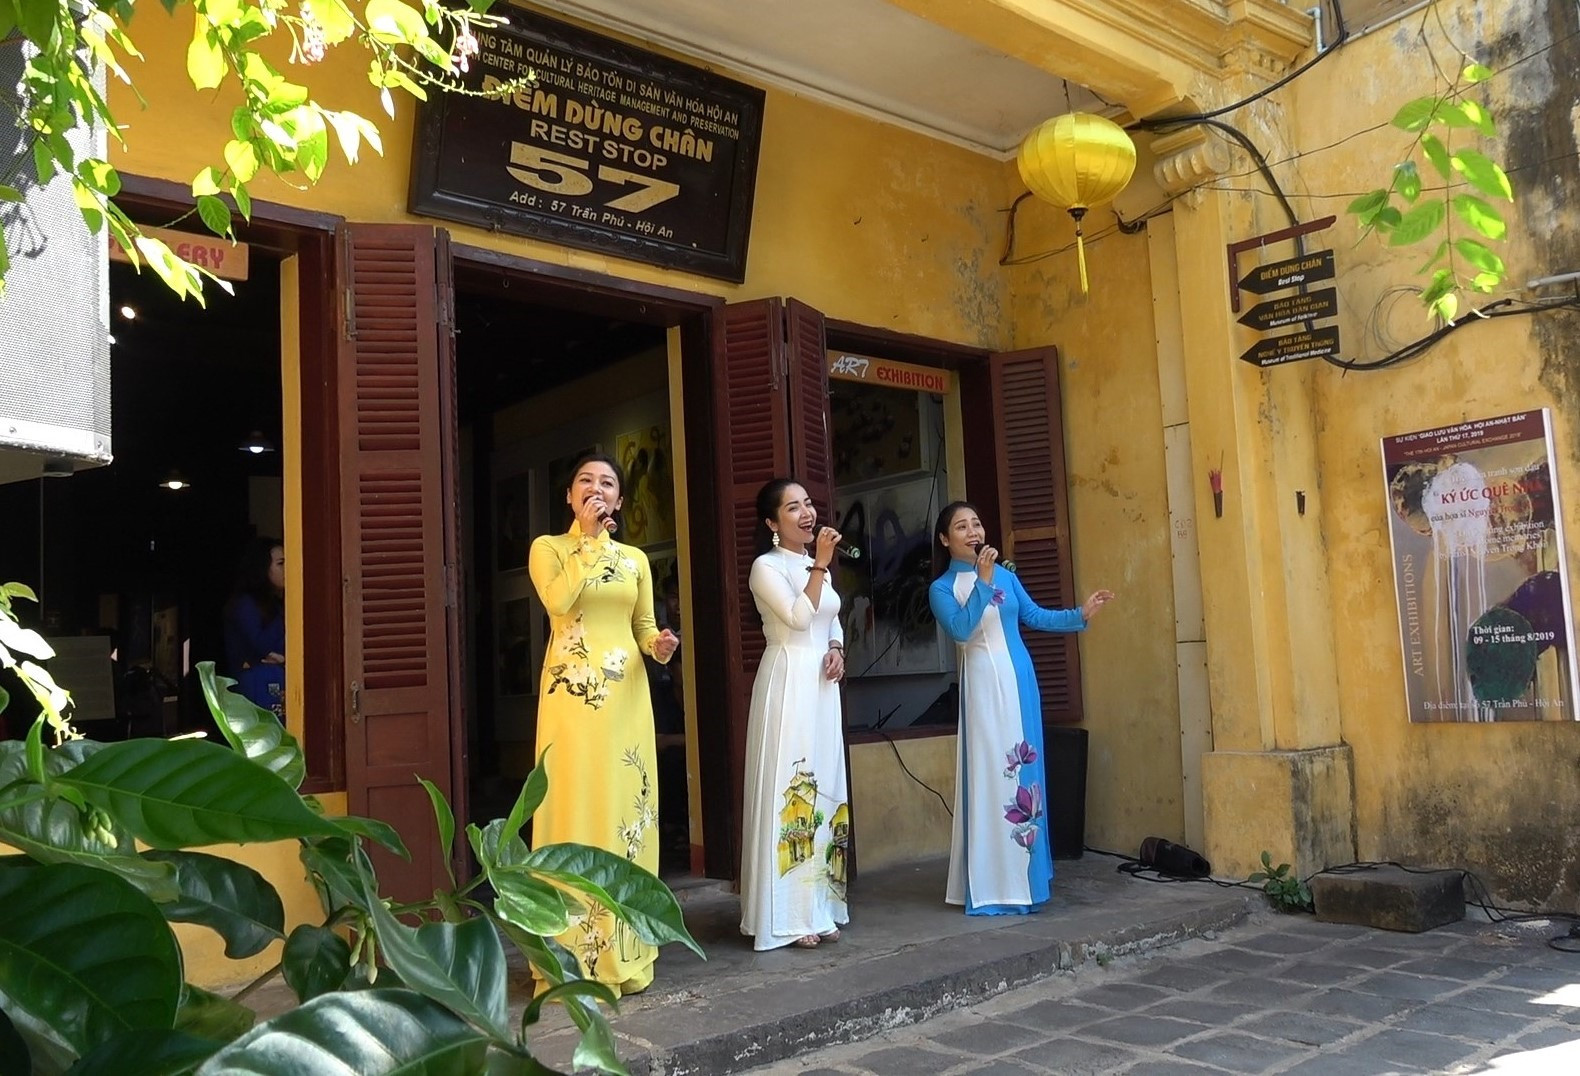 Ngôi nhà số 57 đường Trần Phú sẽ được tu bổm tôn tạo để thành lập Bảo tàng con đường hương liệu, thổ sản Hội An - Quảng Nam. Ảnh: P.S